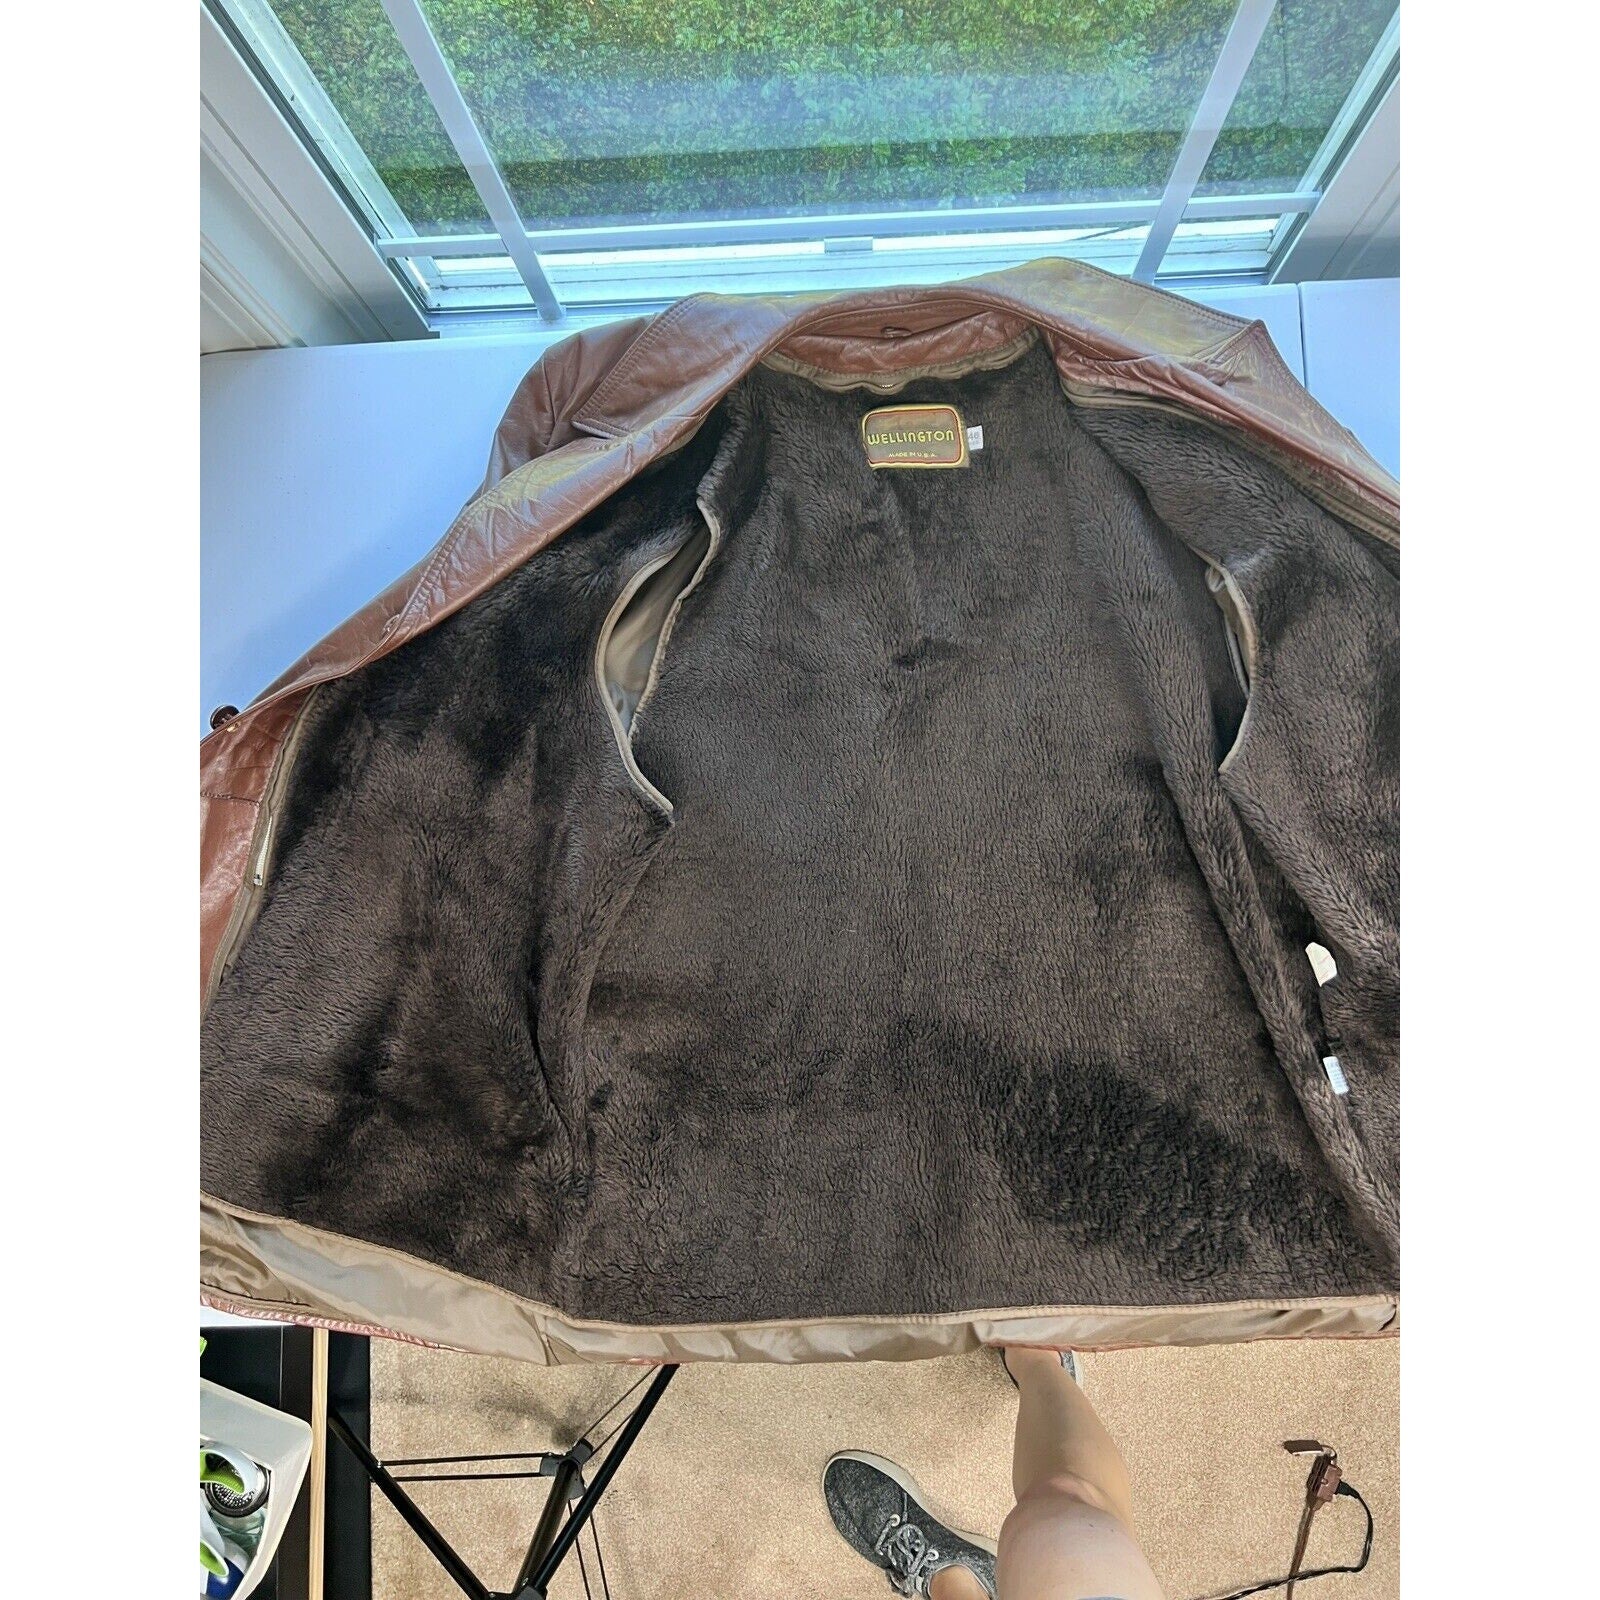 Vintage Leather Jacket Mens 46R 60s 70s Retro Zip Out Liner Coat Jacket Gangster